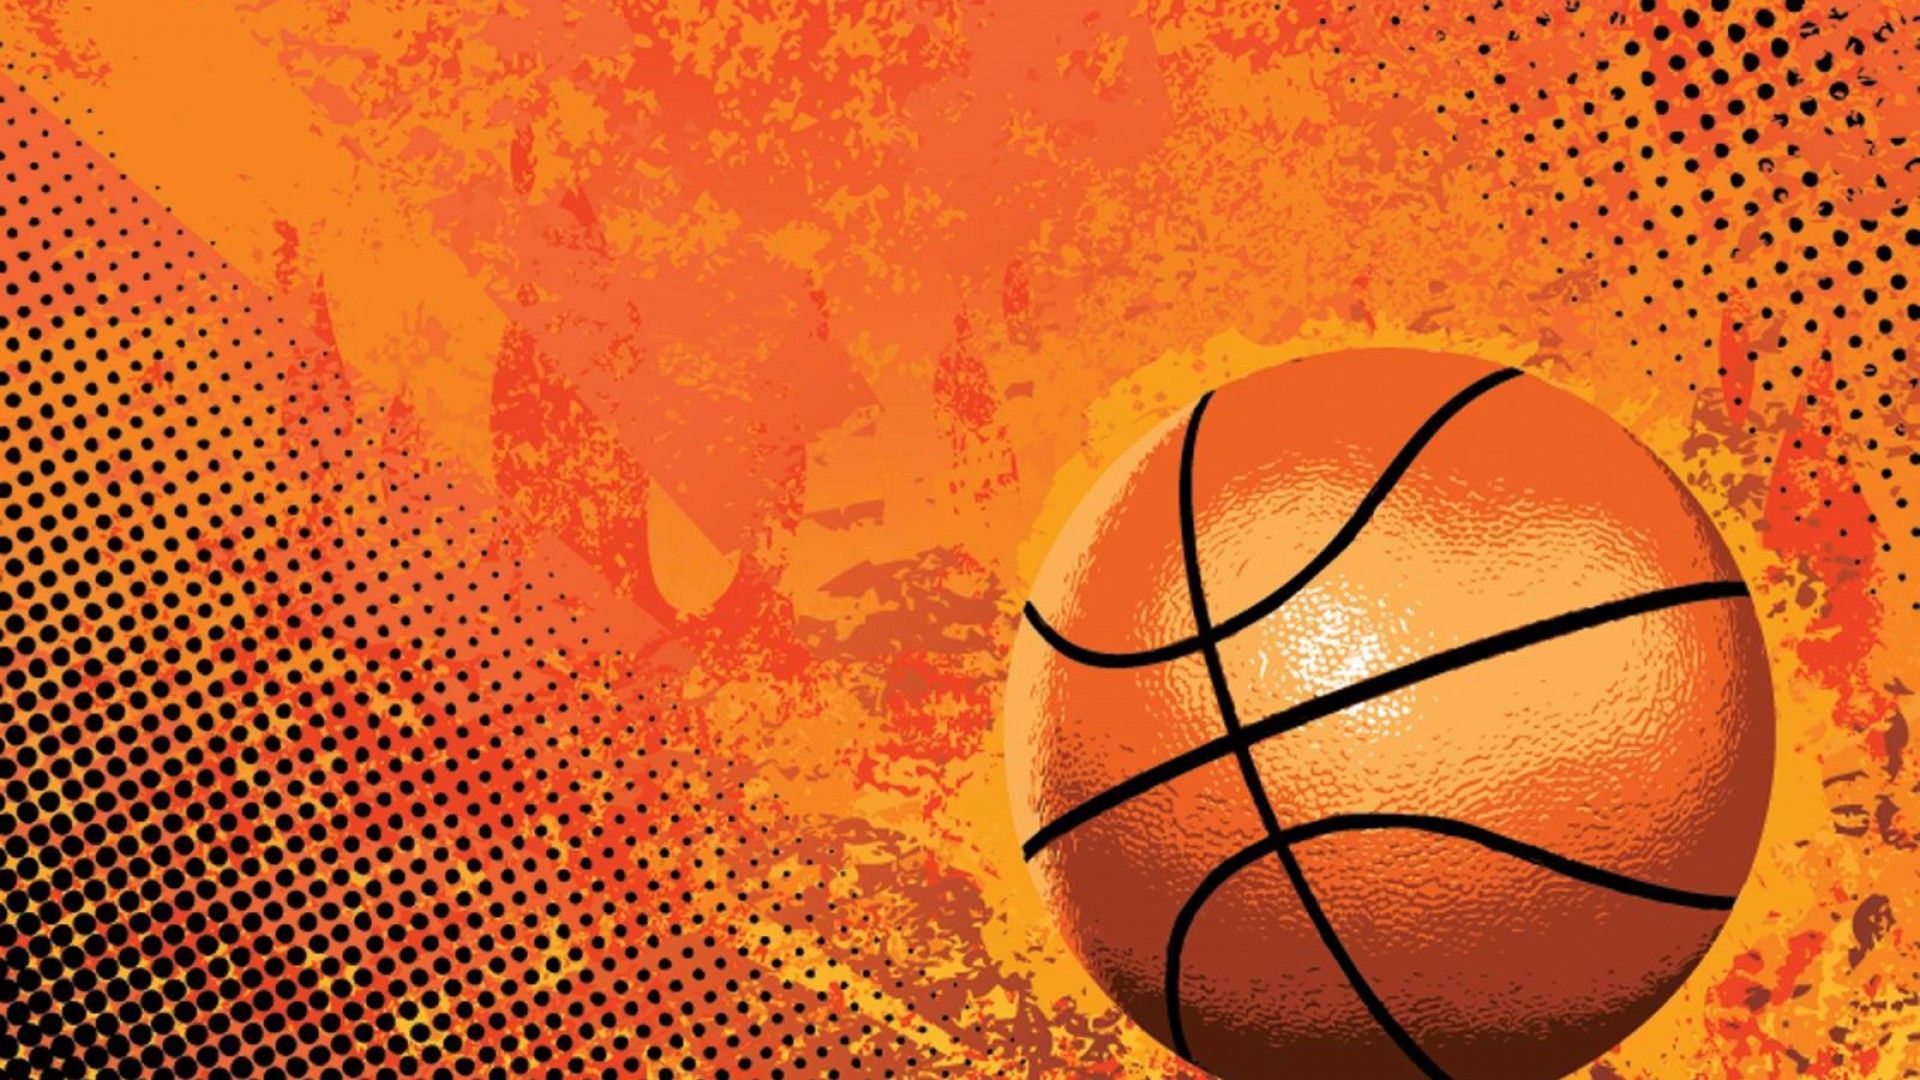 Basketball Wallpaper 18 – HD Wallpaper, Wallpaper Pics - The Best ...